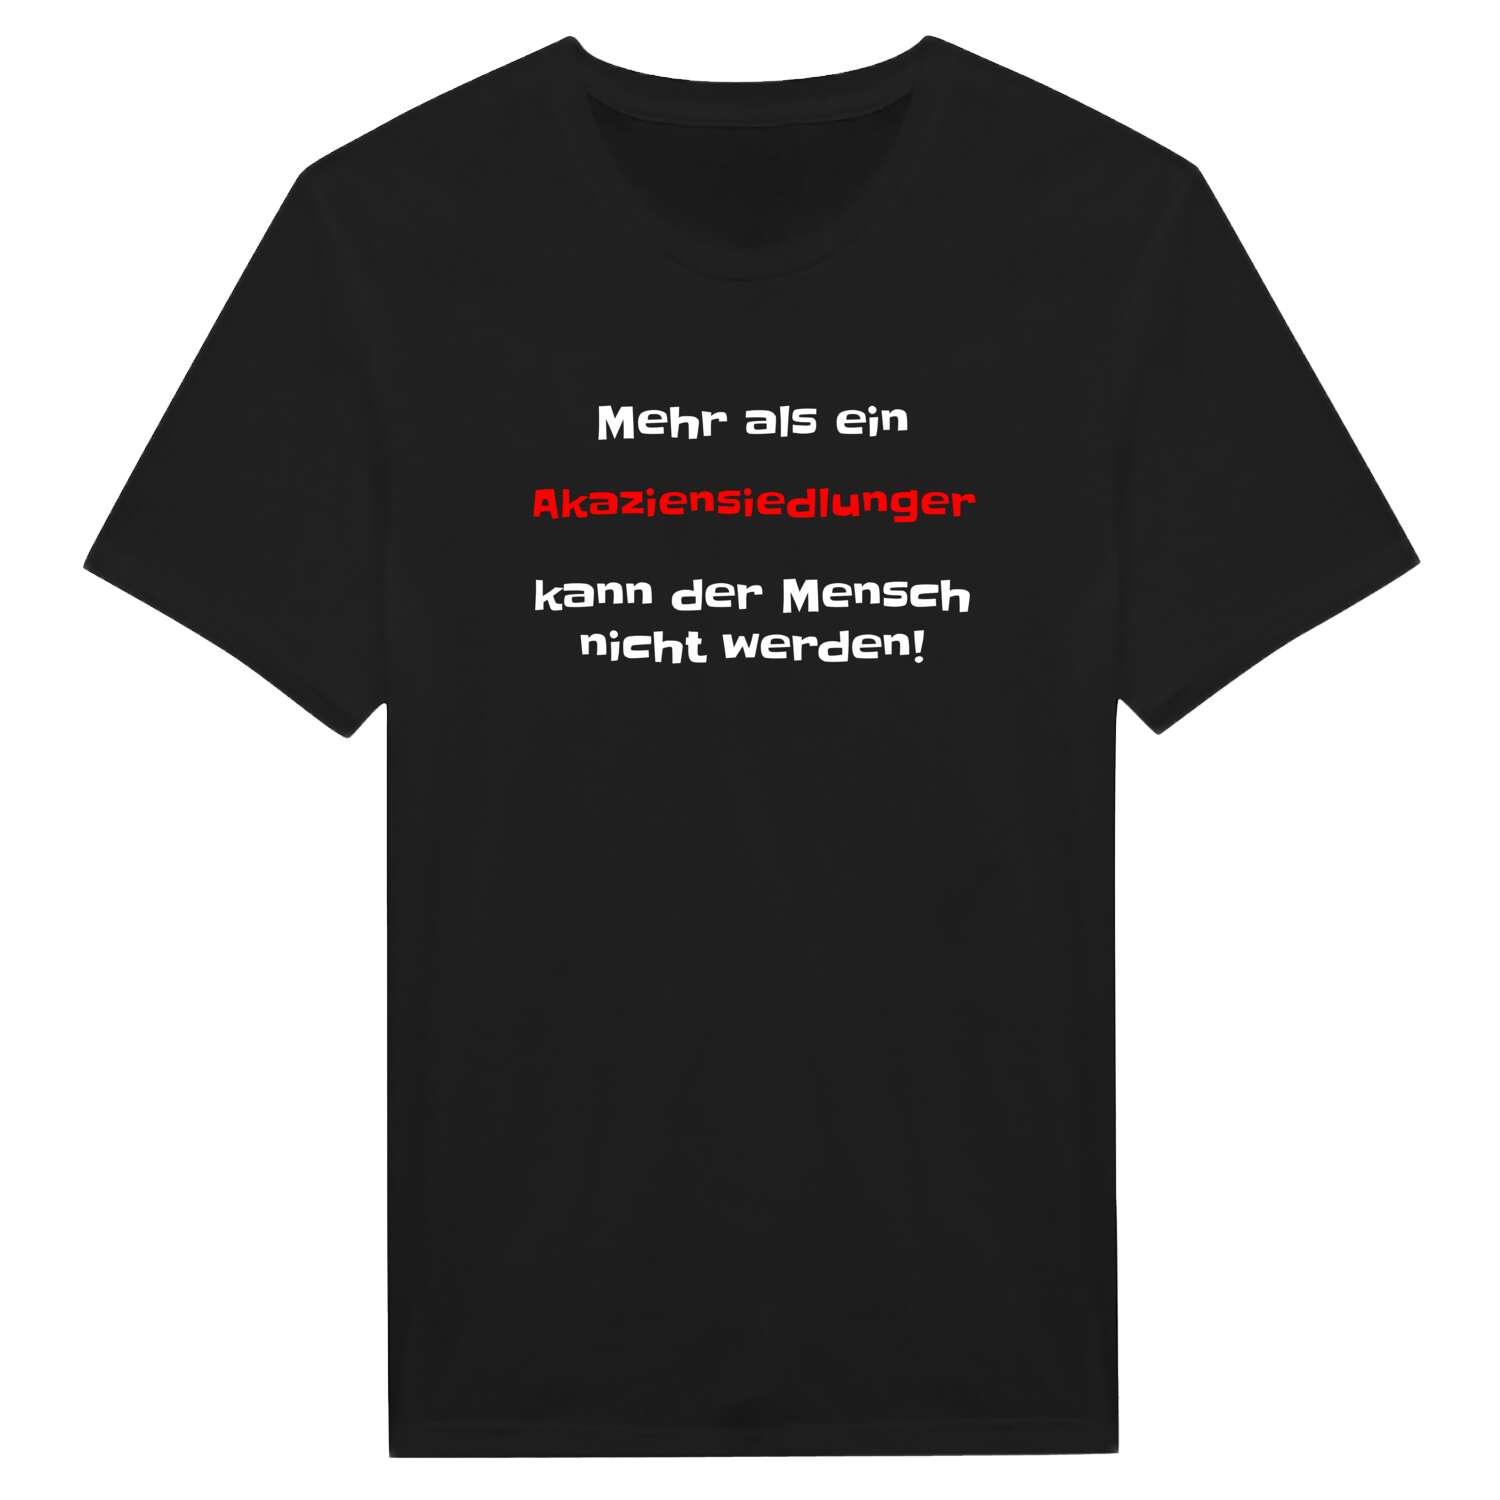 Akaziensiedlung T-Shirt »Mehr als ein«